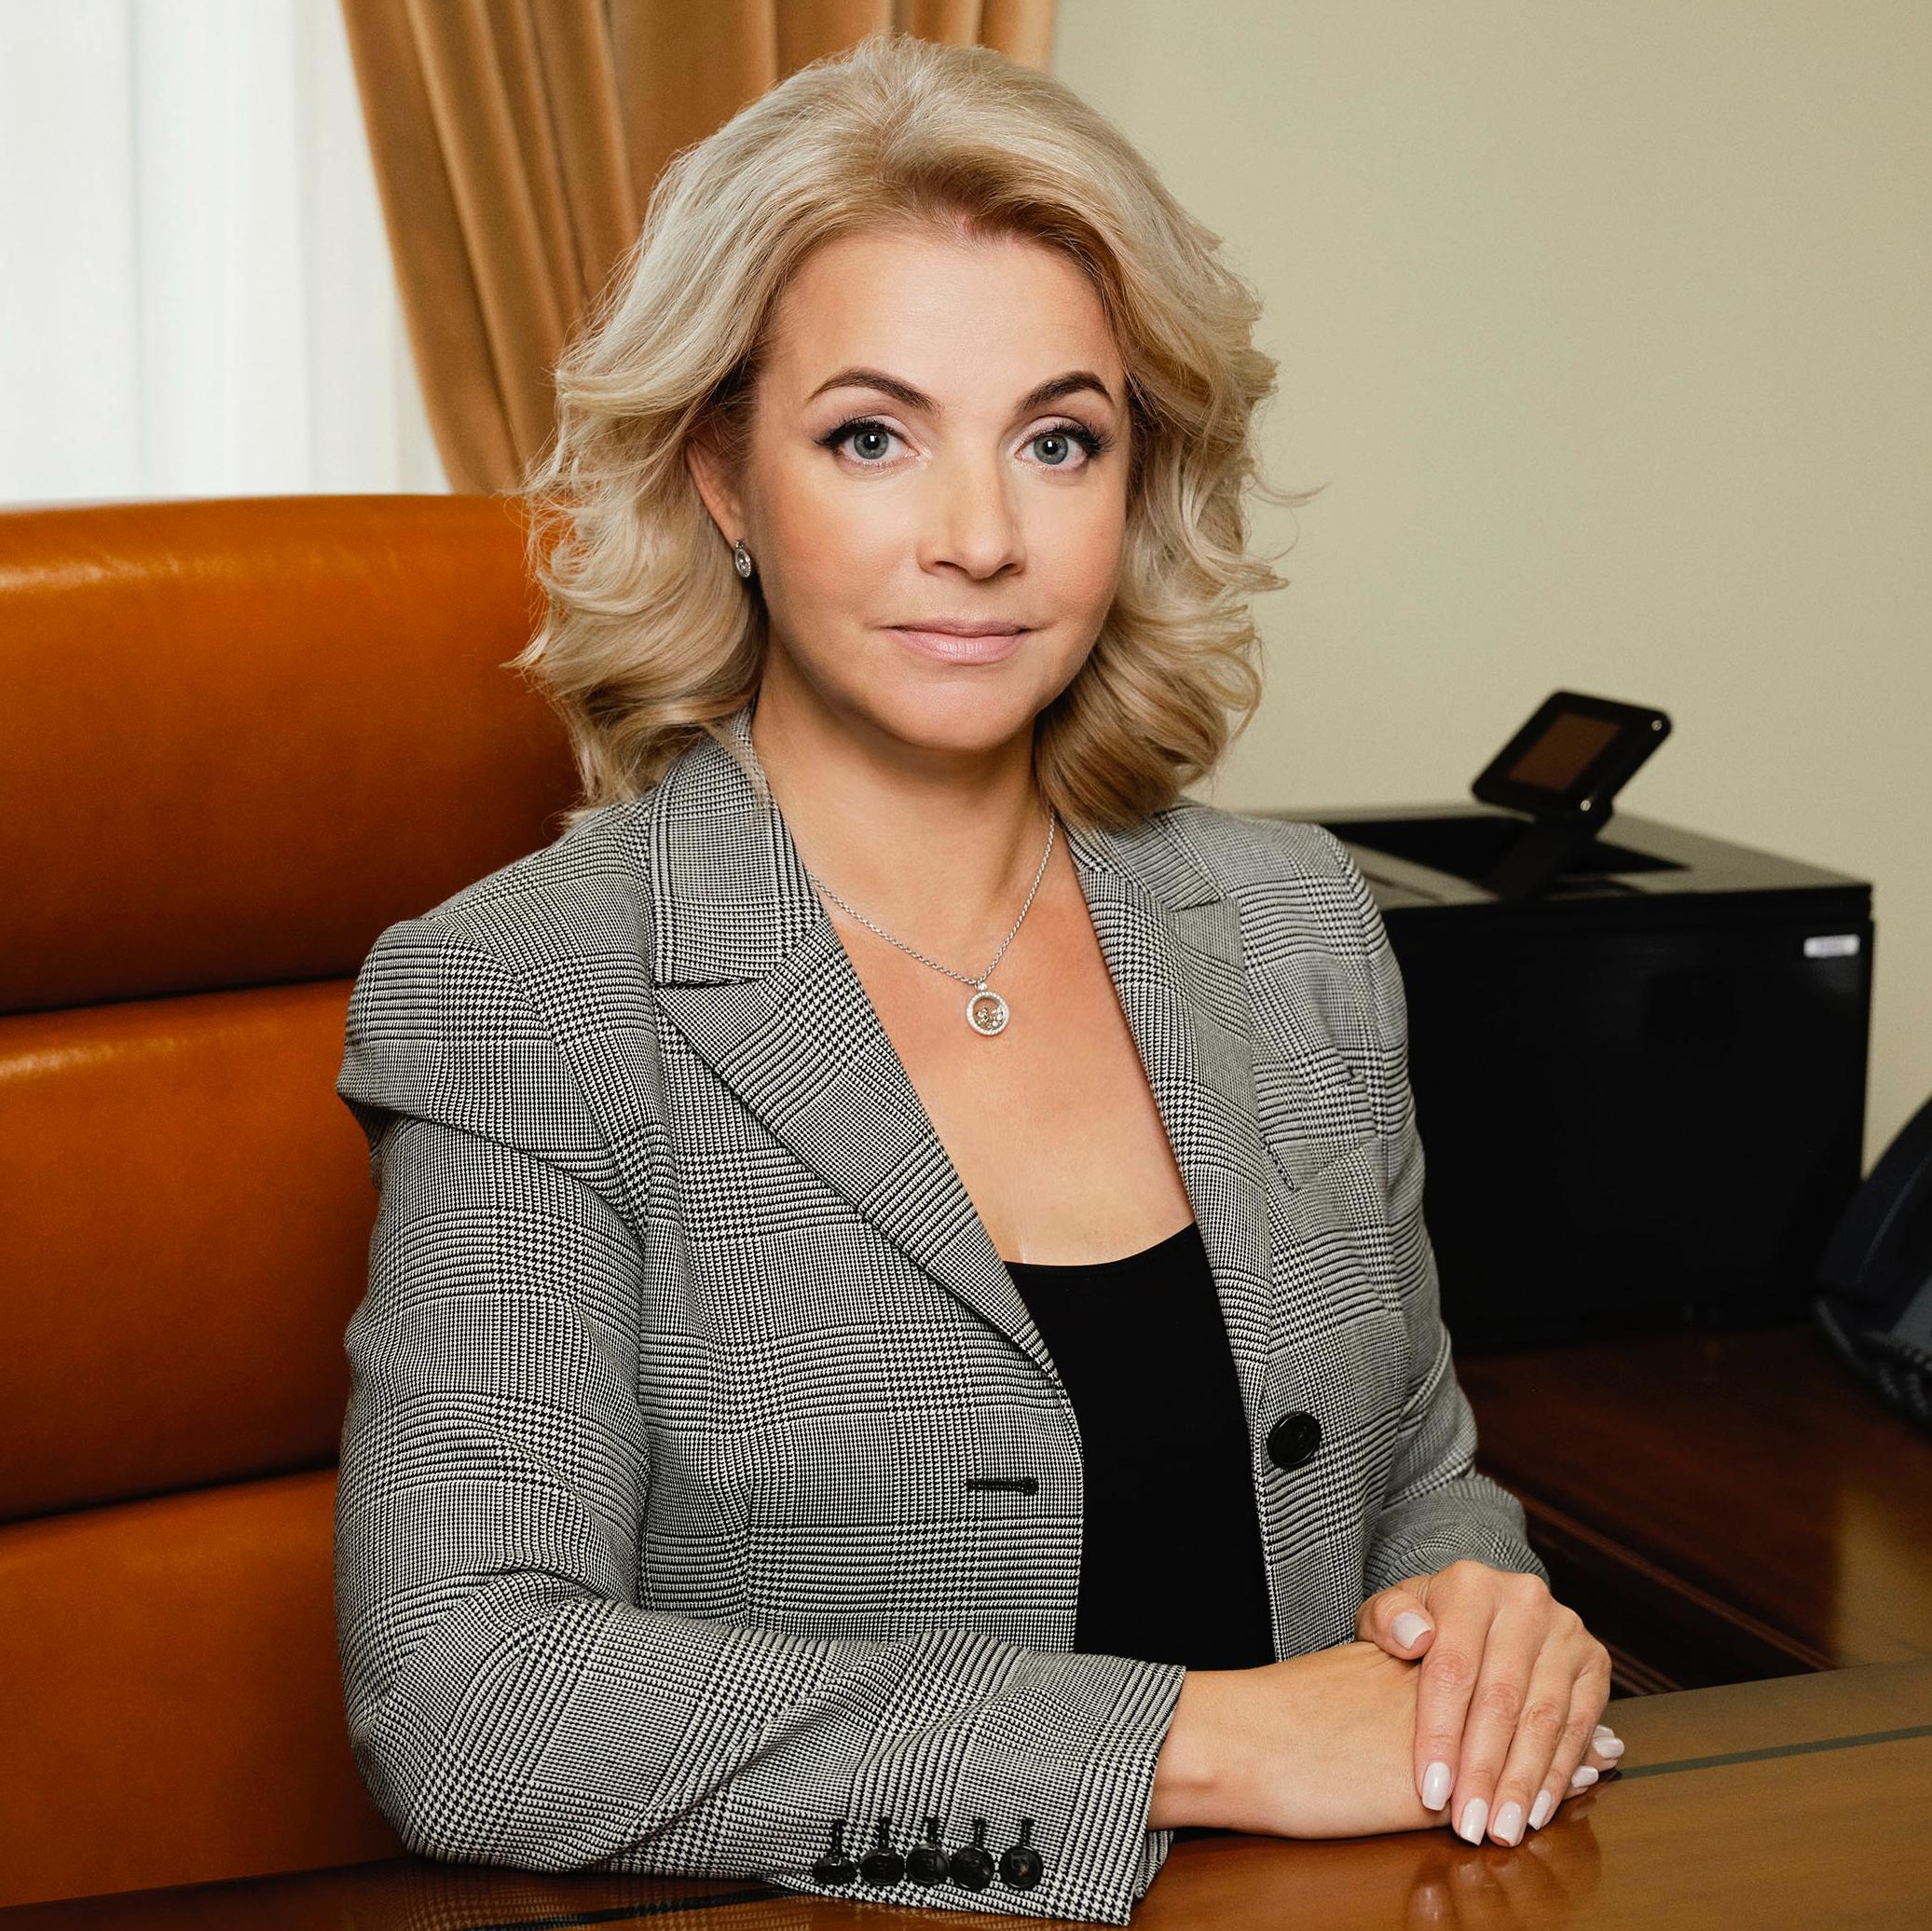 Елена Георгиева: «Мы всегда подставляем плечо своим ключевым клиентам»